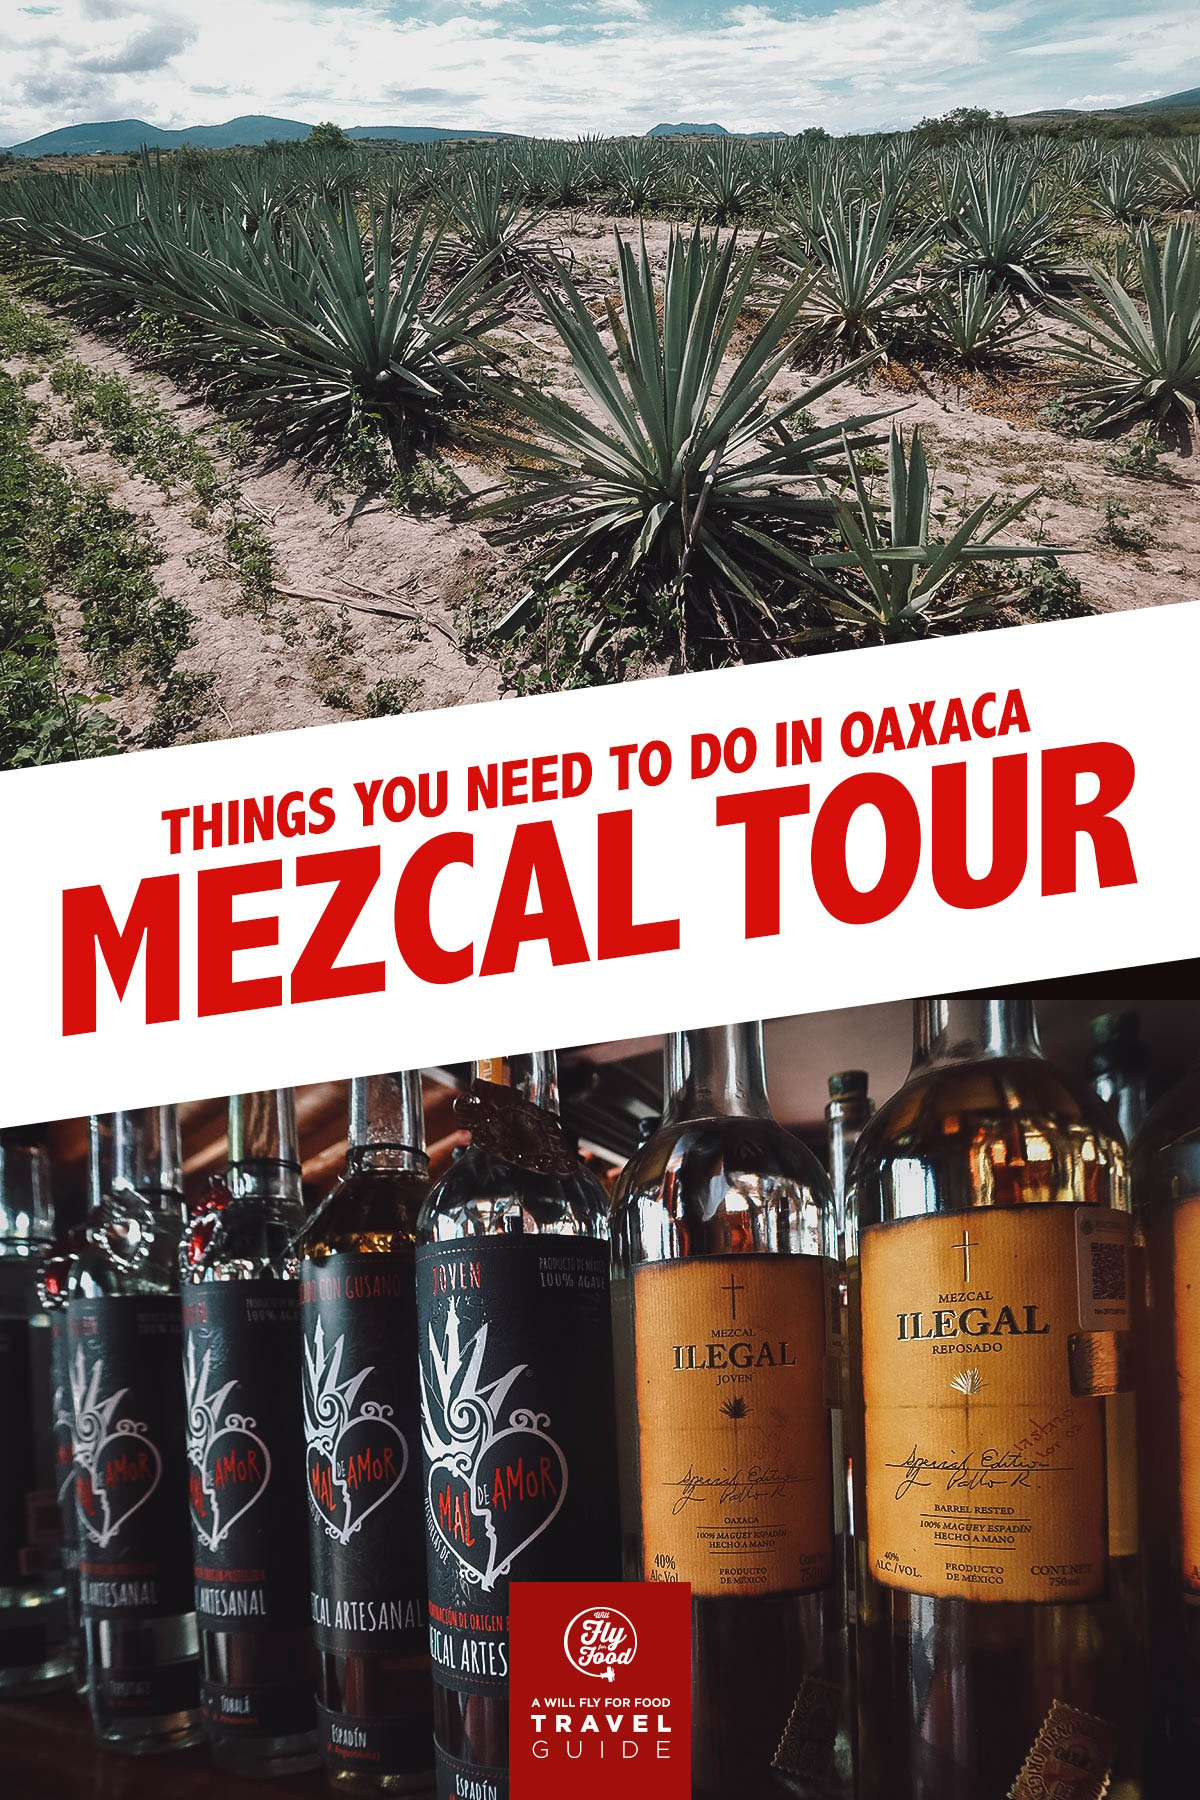 Agave plants and mezcal bottles